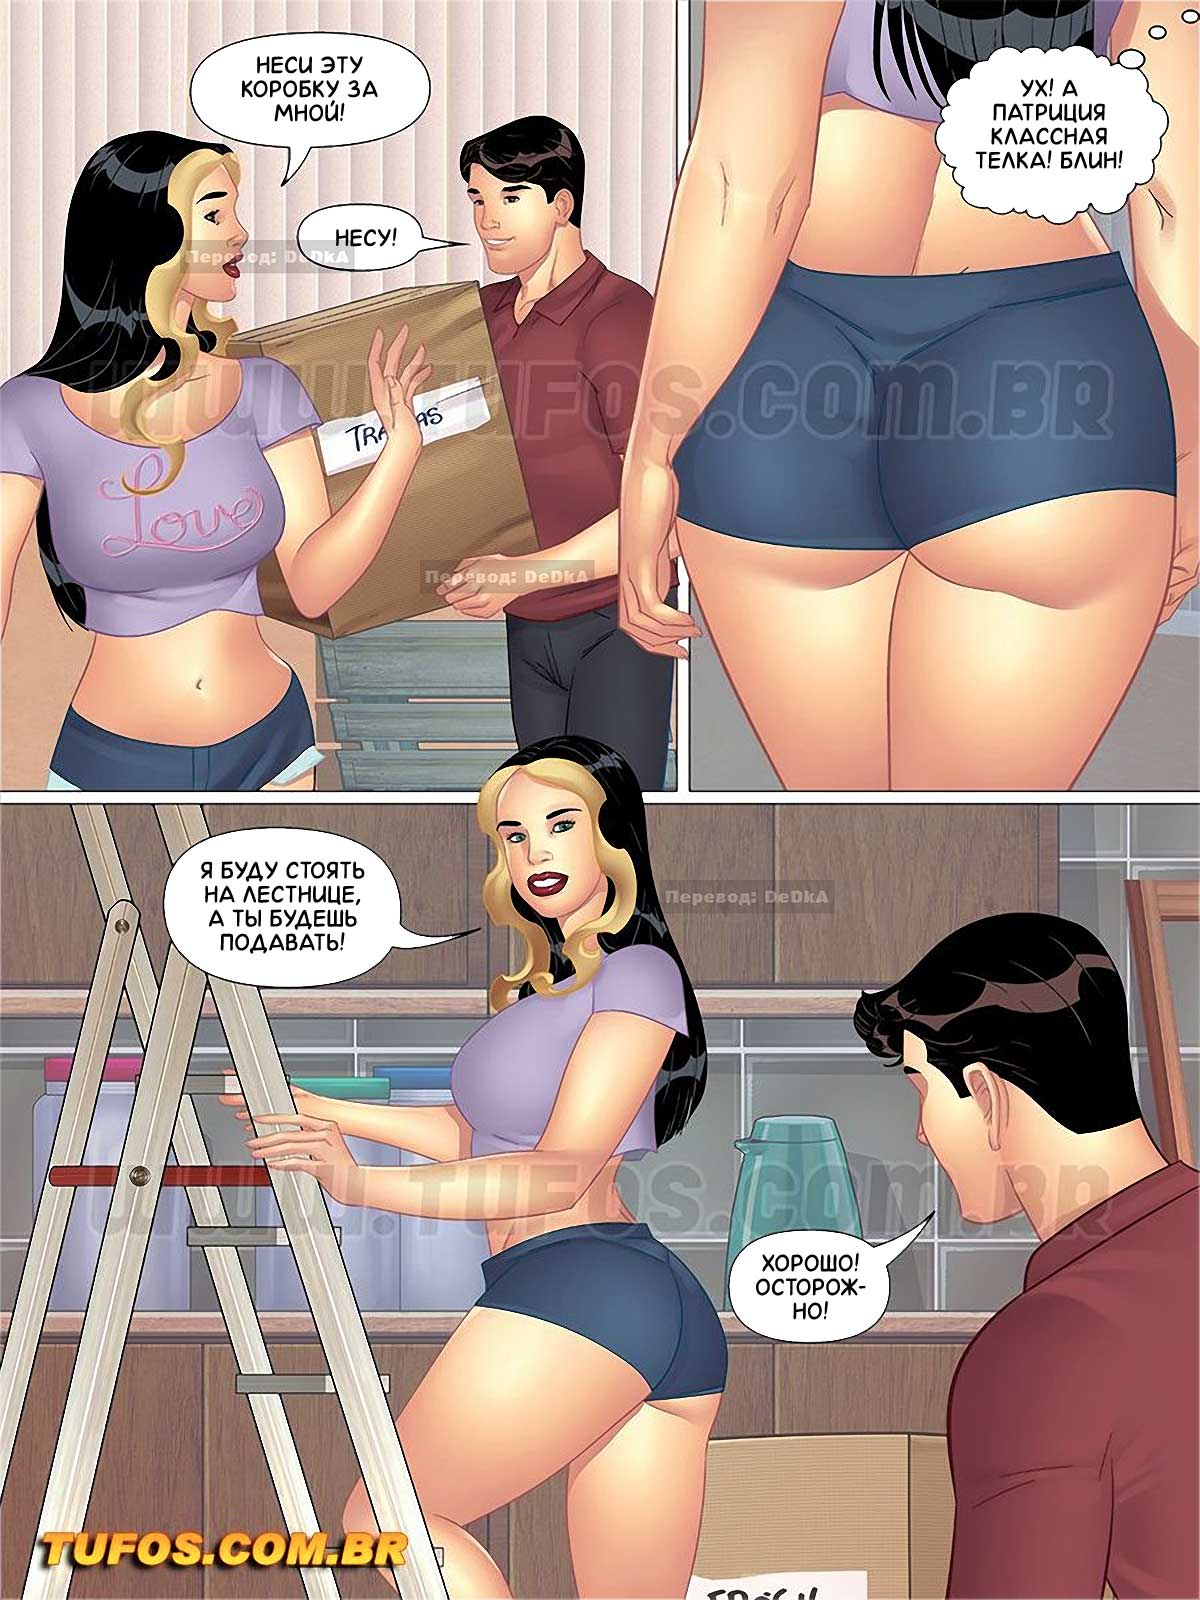 Порно комикс переезд фото 103